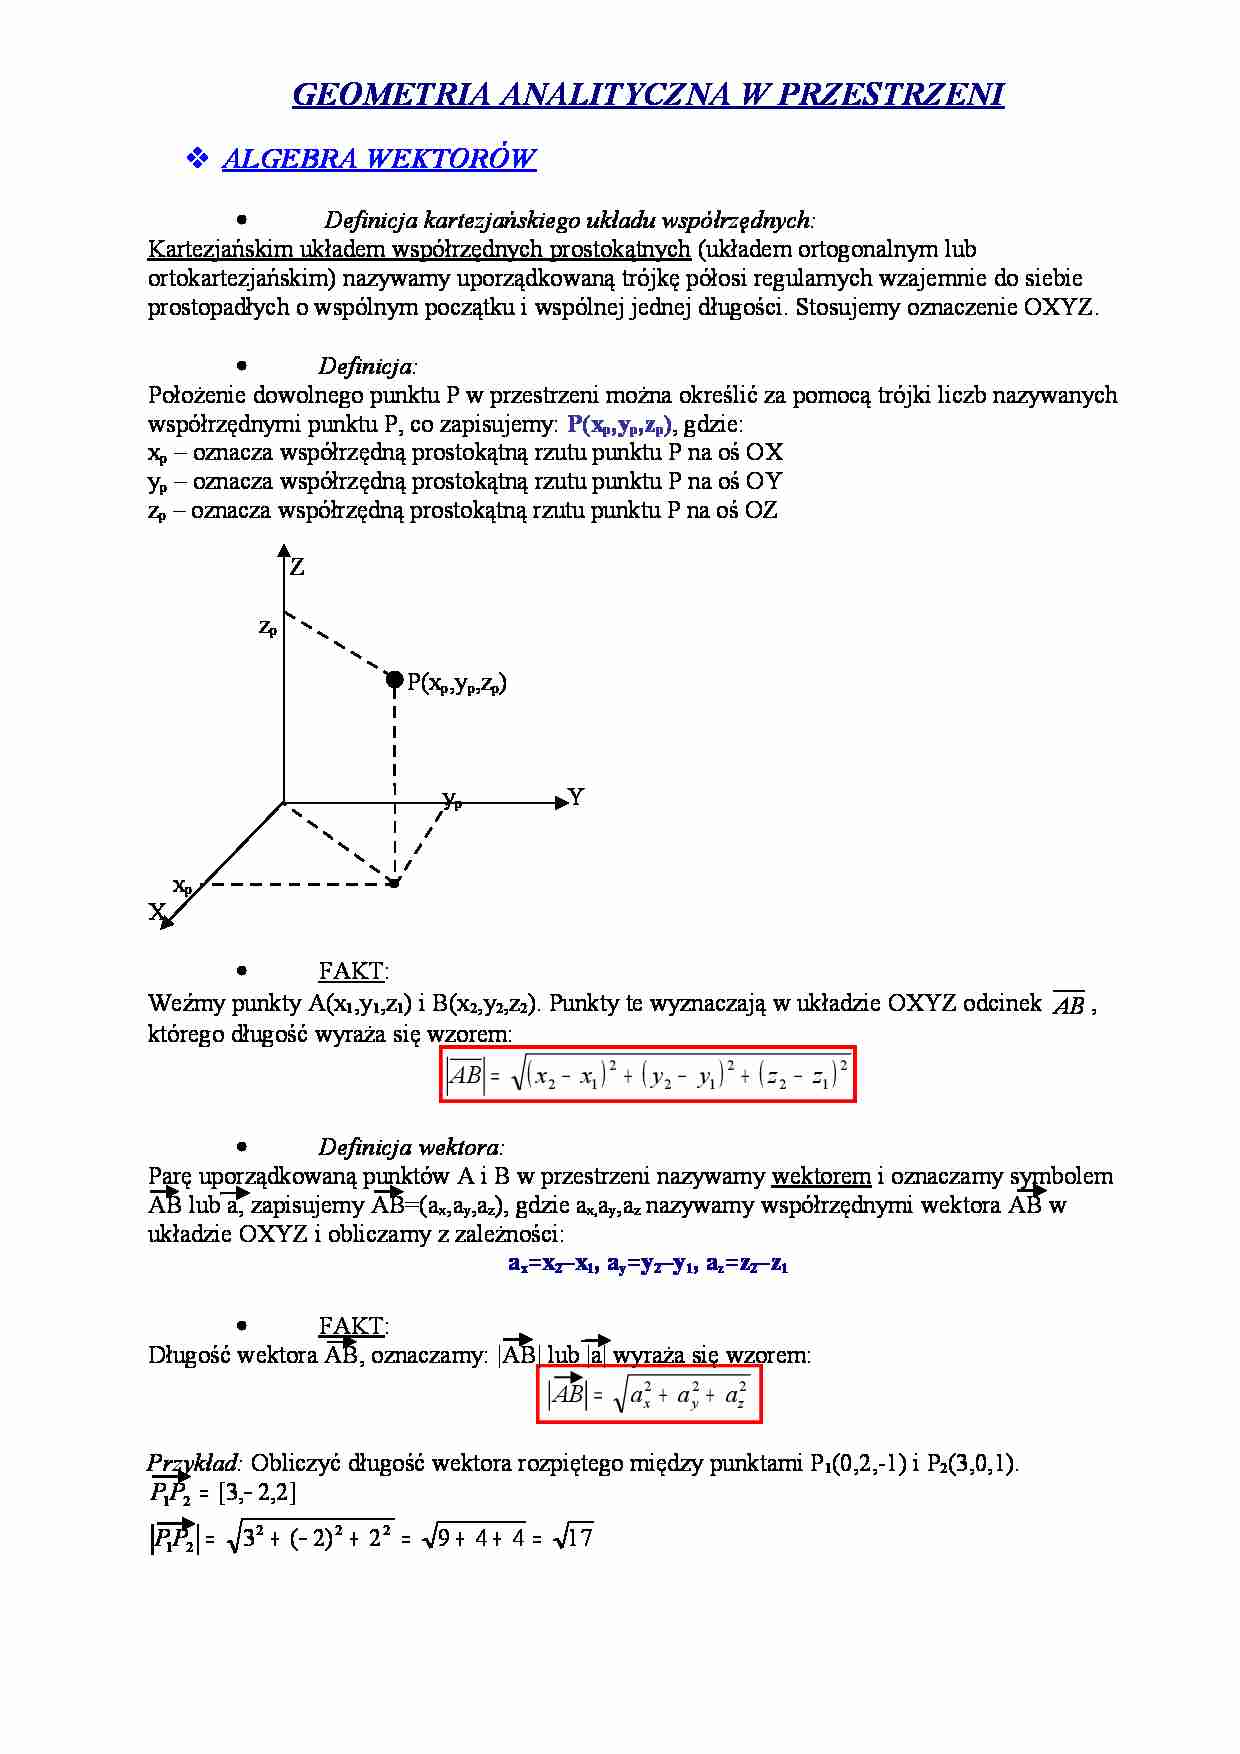 Geometria analityczna w przestrzeni - Antena kolinearna - ALGEBRA WEKTORÓW - strona 1